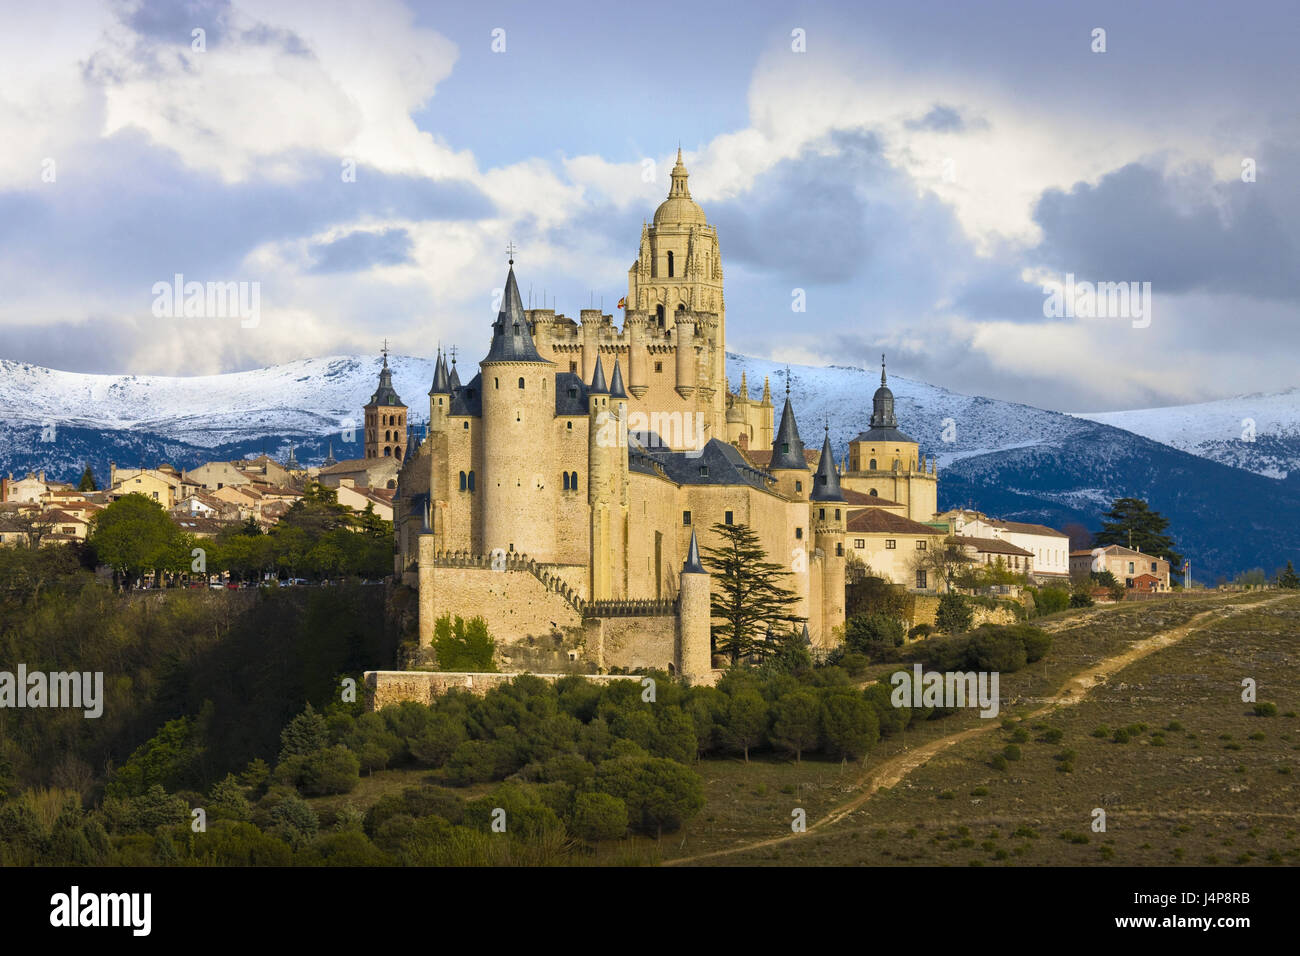 L'Espagne, de Castille, Segovia, verrou, cathédrale, Kastilien-Leon, bâtiment, structures, château, église, architecture, maisons, maisons d'habitation, le lieu d'intérêts, le tourisme, la montagne, la neige, le ciel, les nuages, Banque D'Images